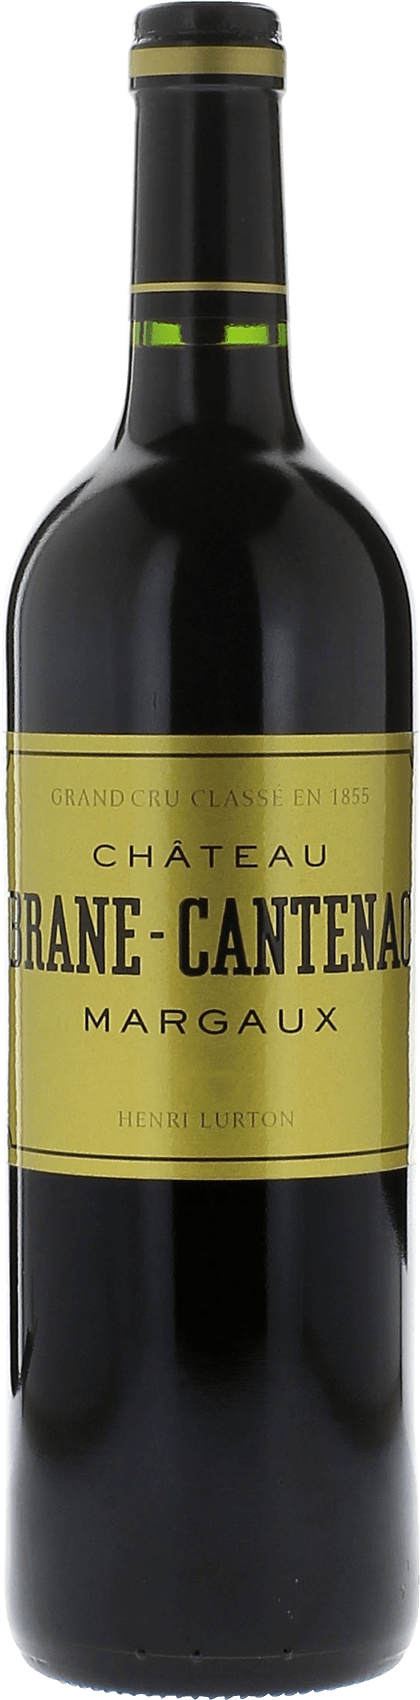 Brane cantenac 1993 2me Grand cru class Margaux, Bordeaux rouge